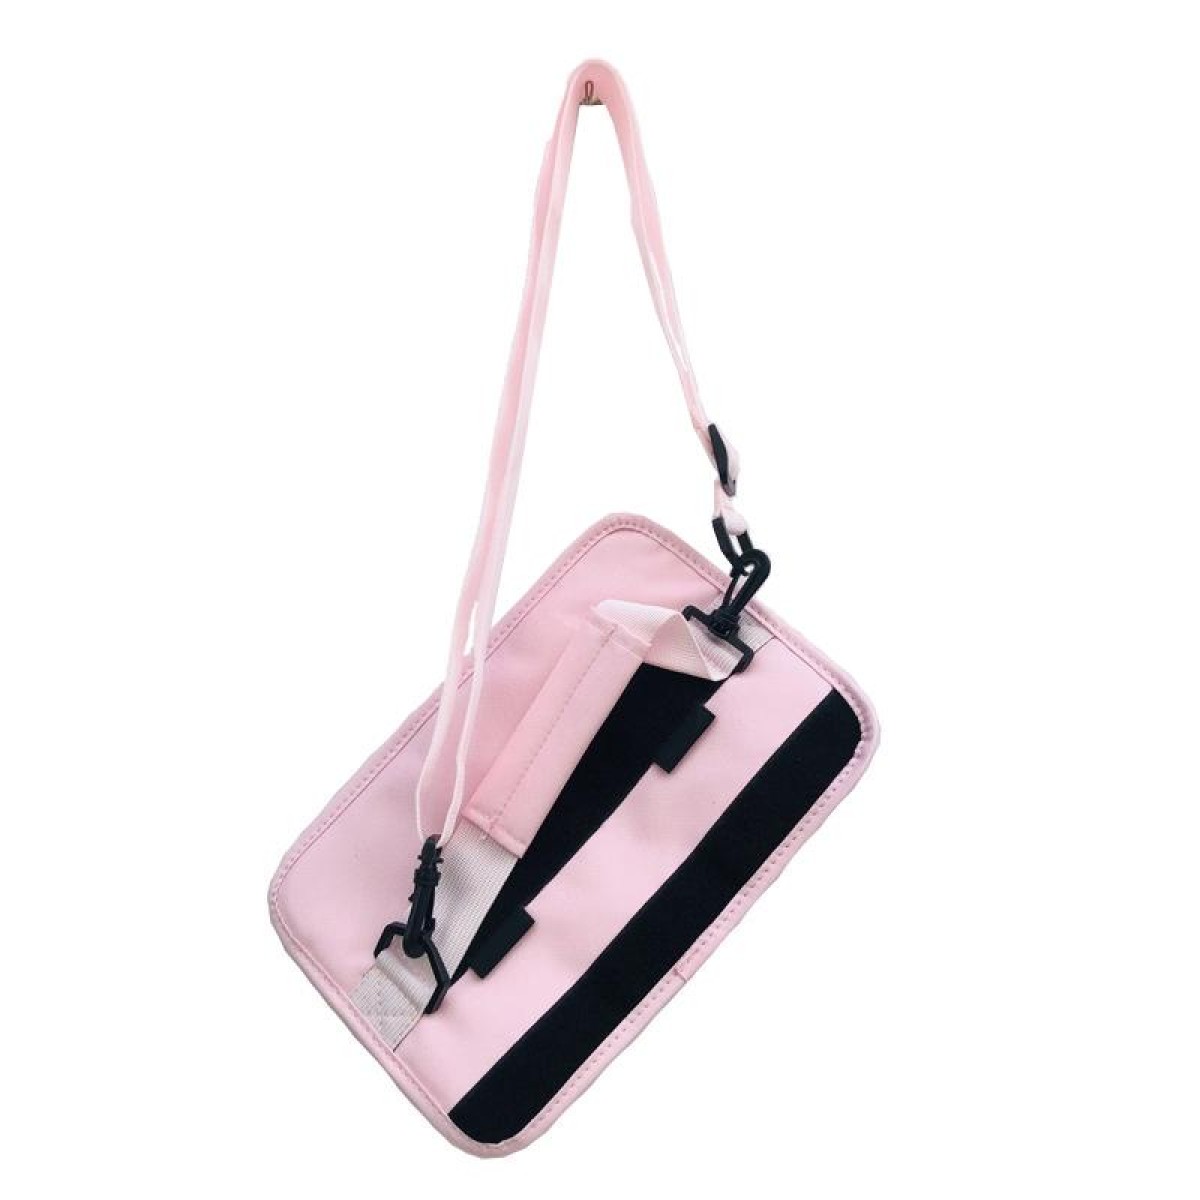 SL-001 Golf Bag Portable Cue HandBag(Pink)